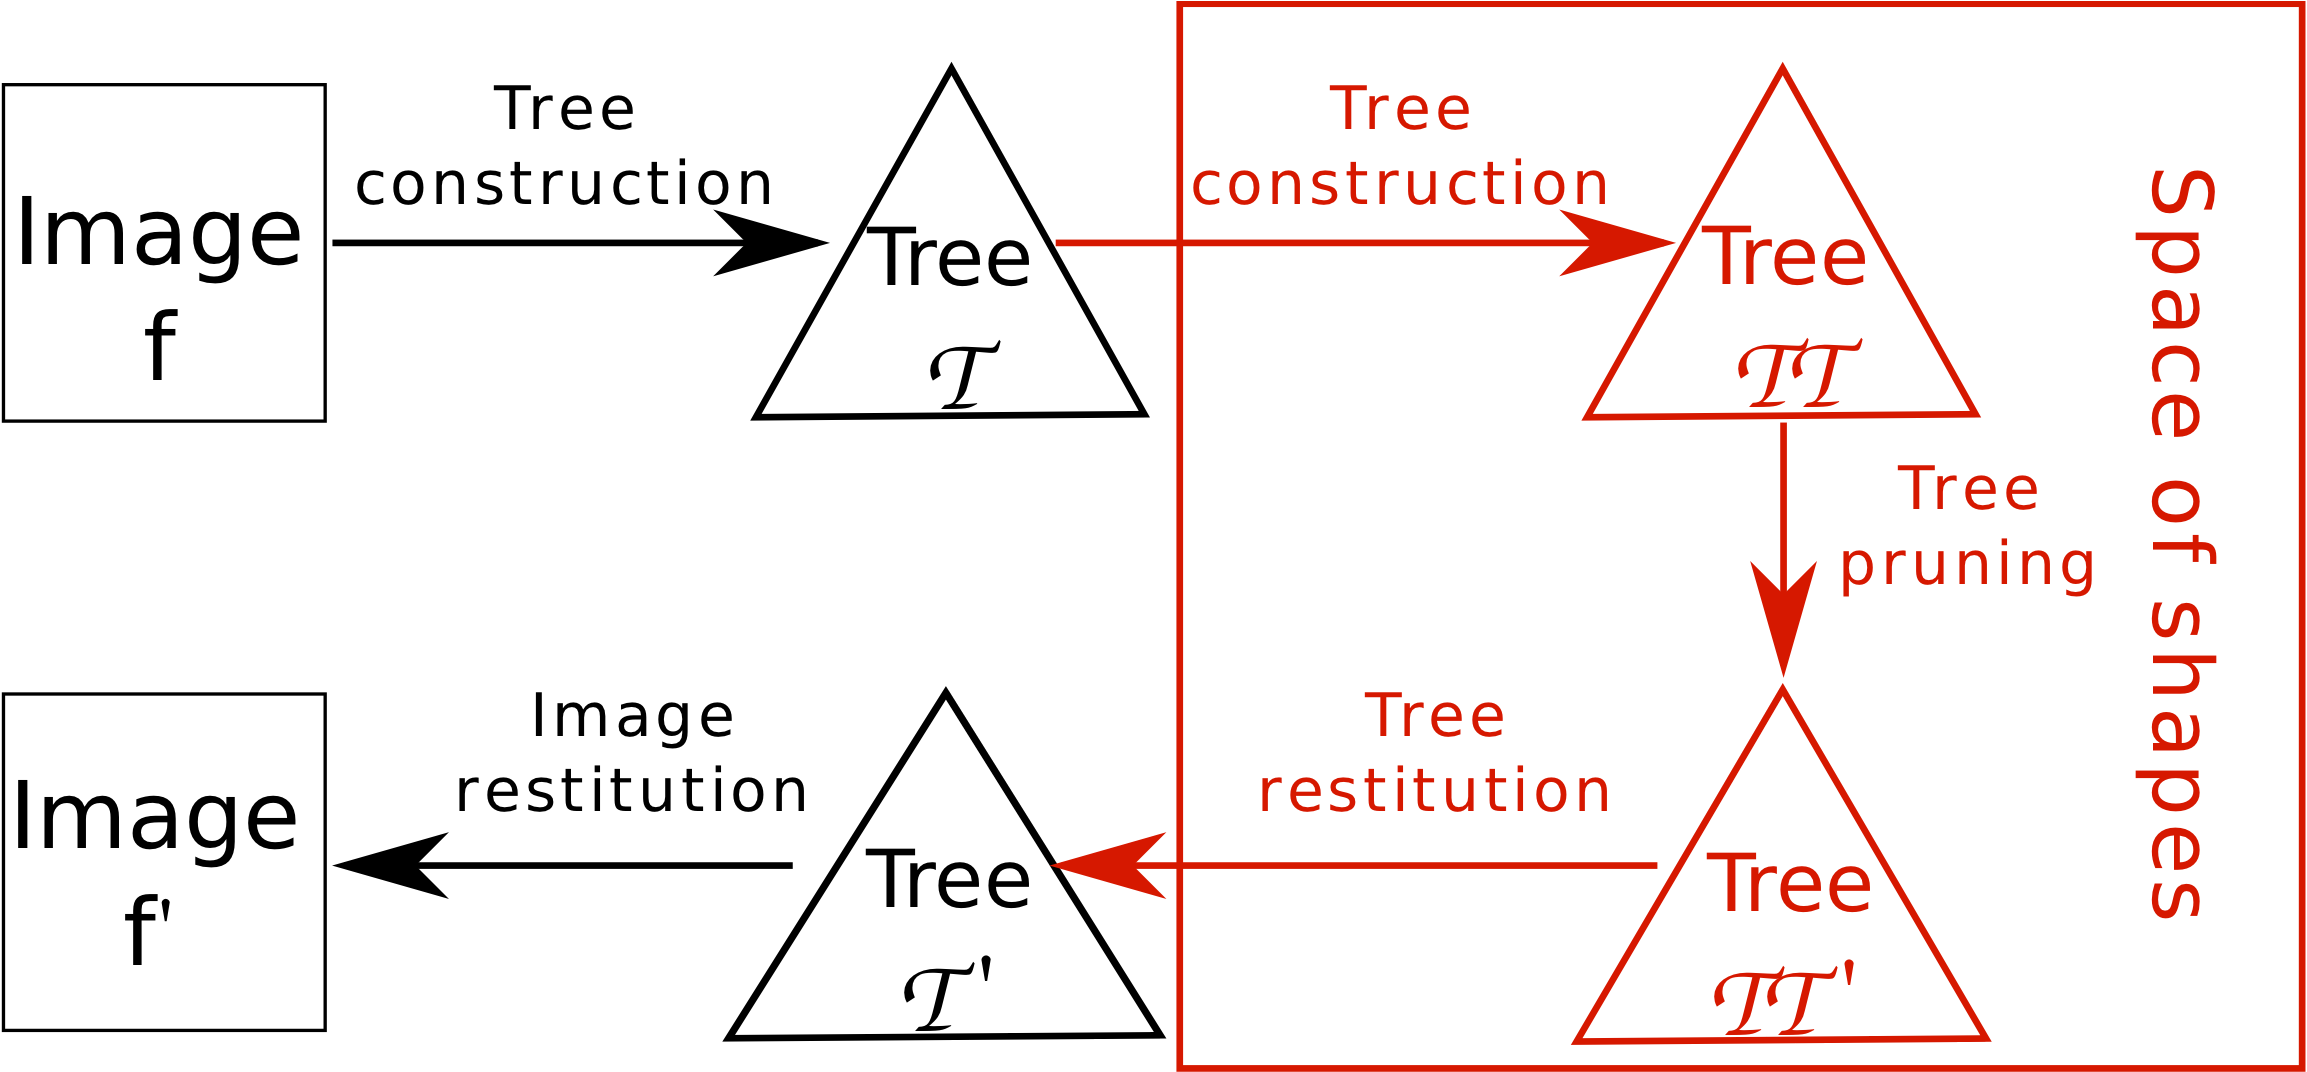 Shape-Based morphological framework scheme